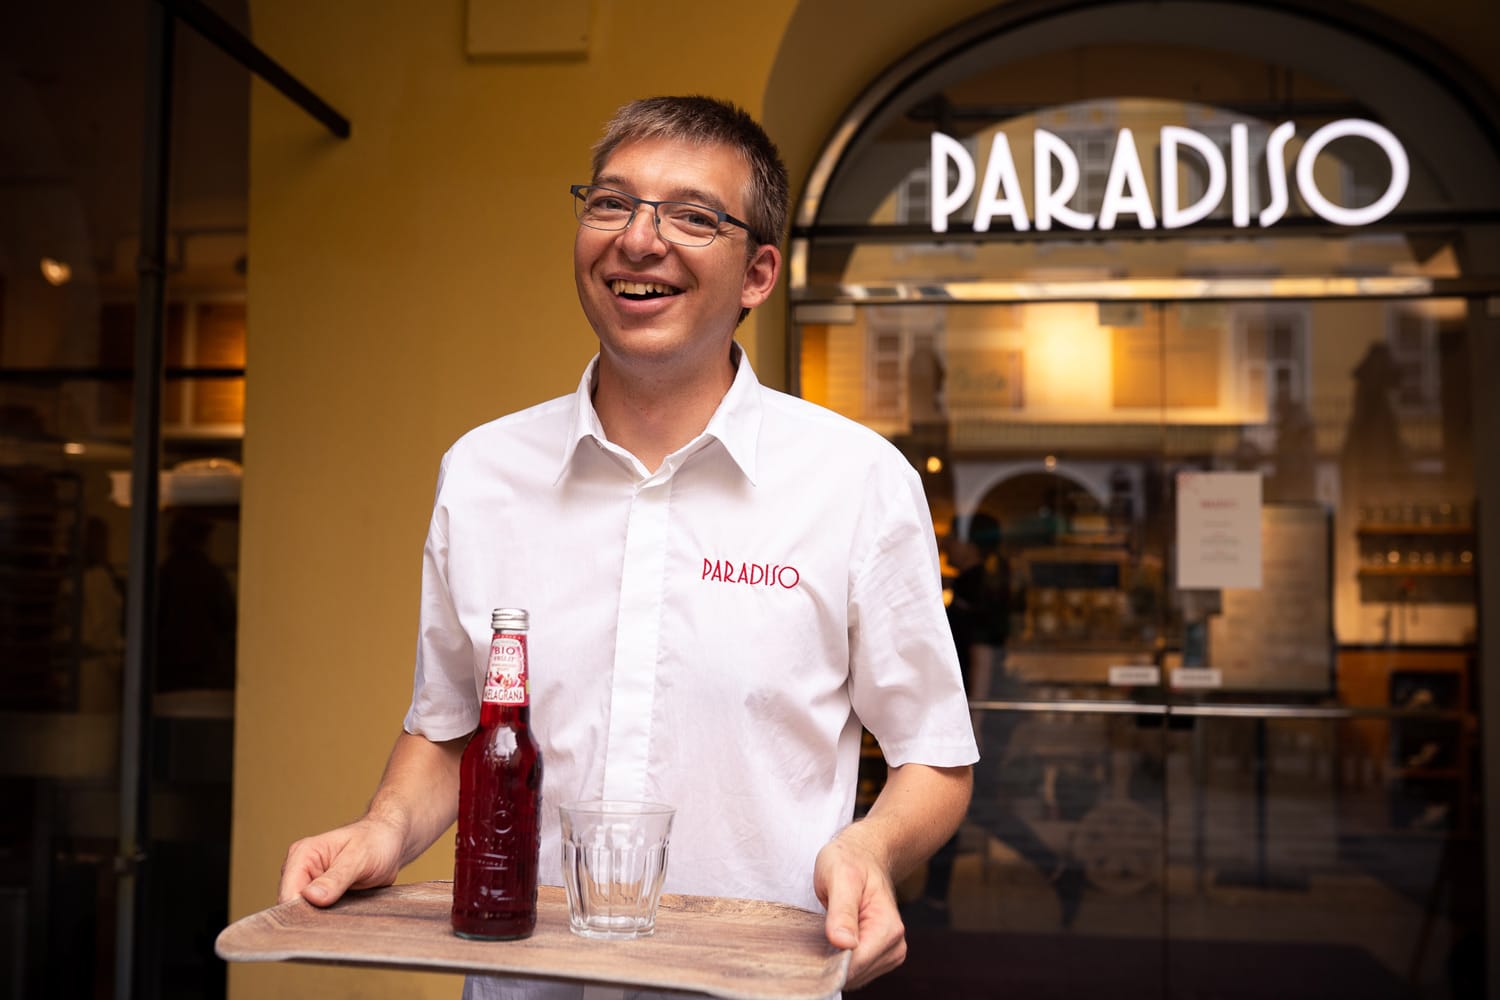 junger Kellner serviert Getränke, steht vor Lokal Paradiso